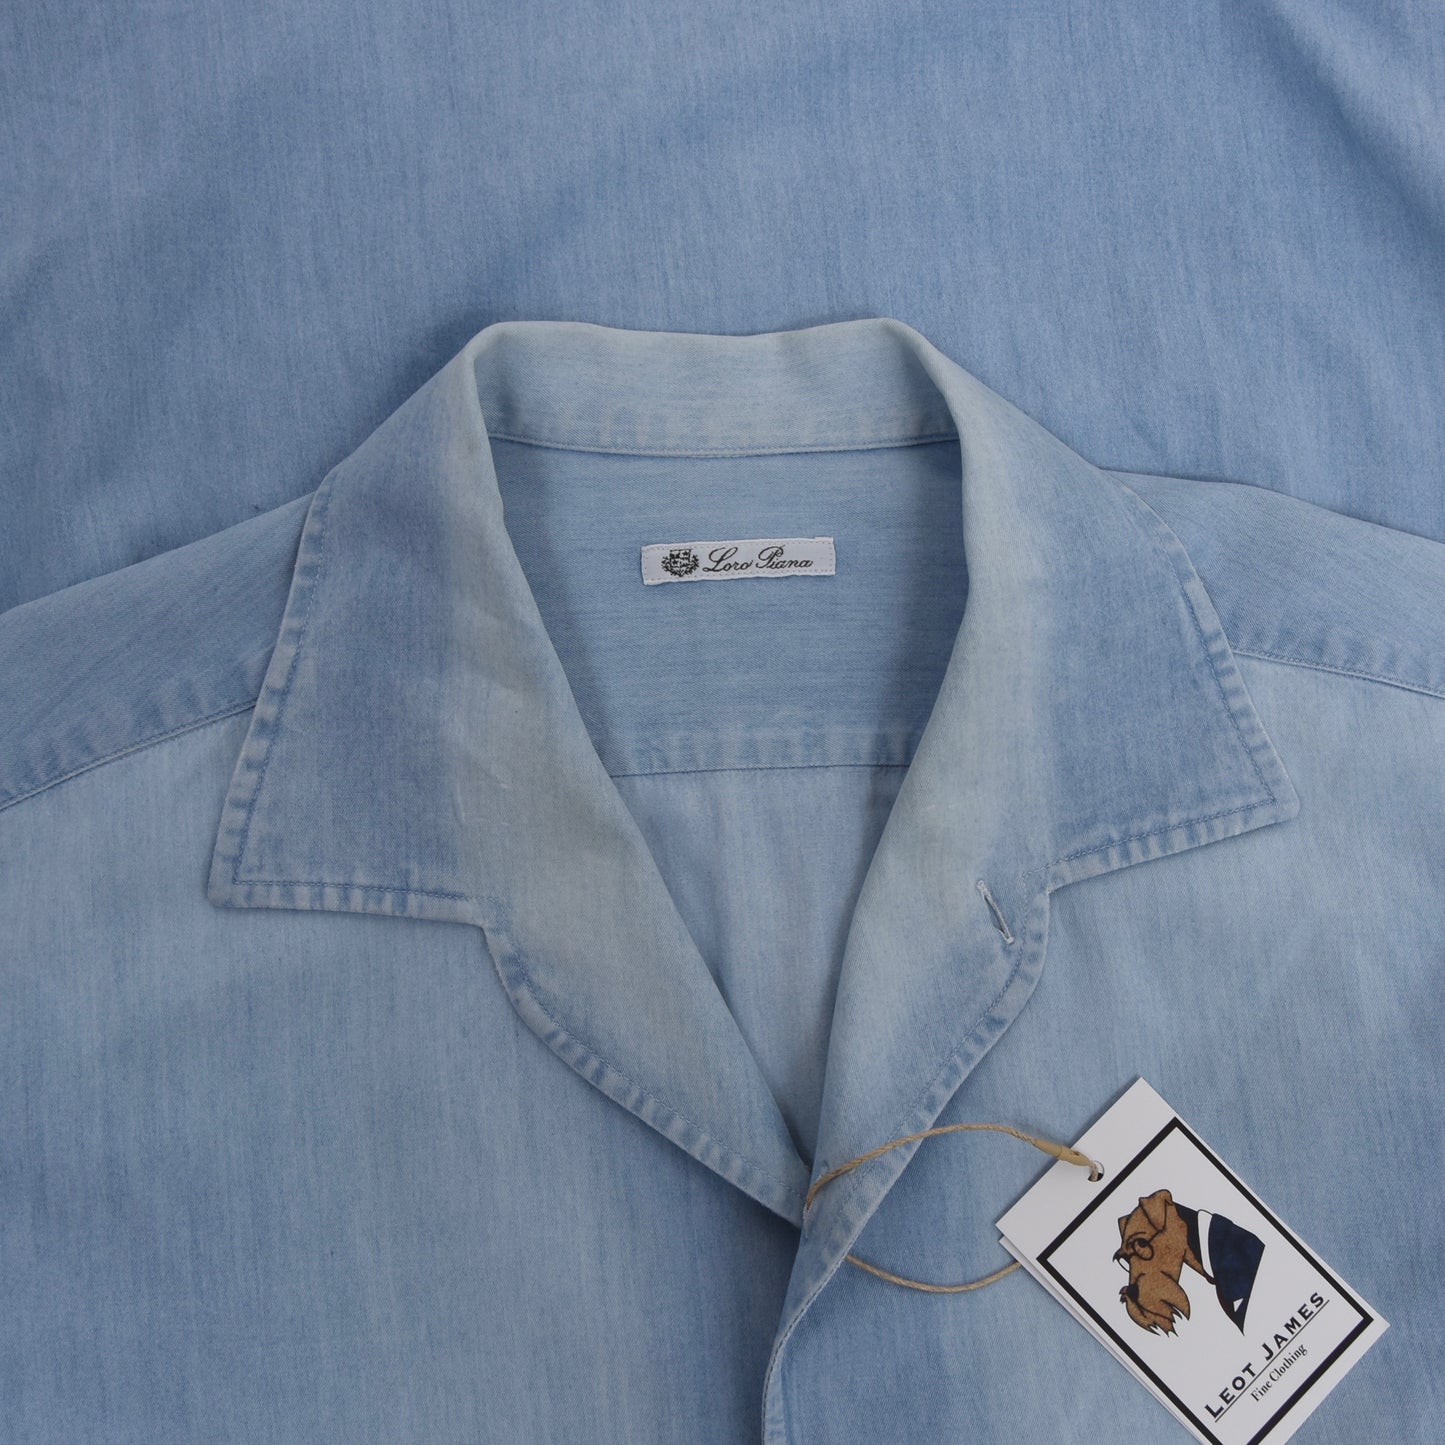 Loro Piana One-Piece Collar Chambray Shirt Size XXL - Blue